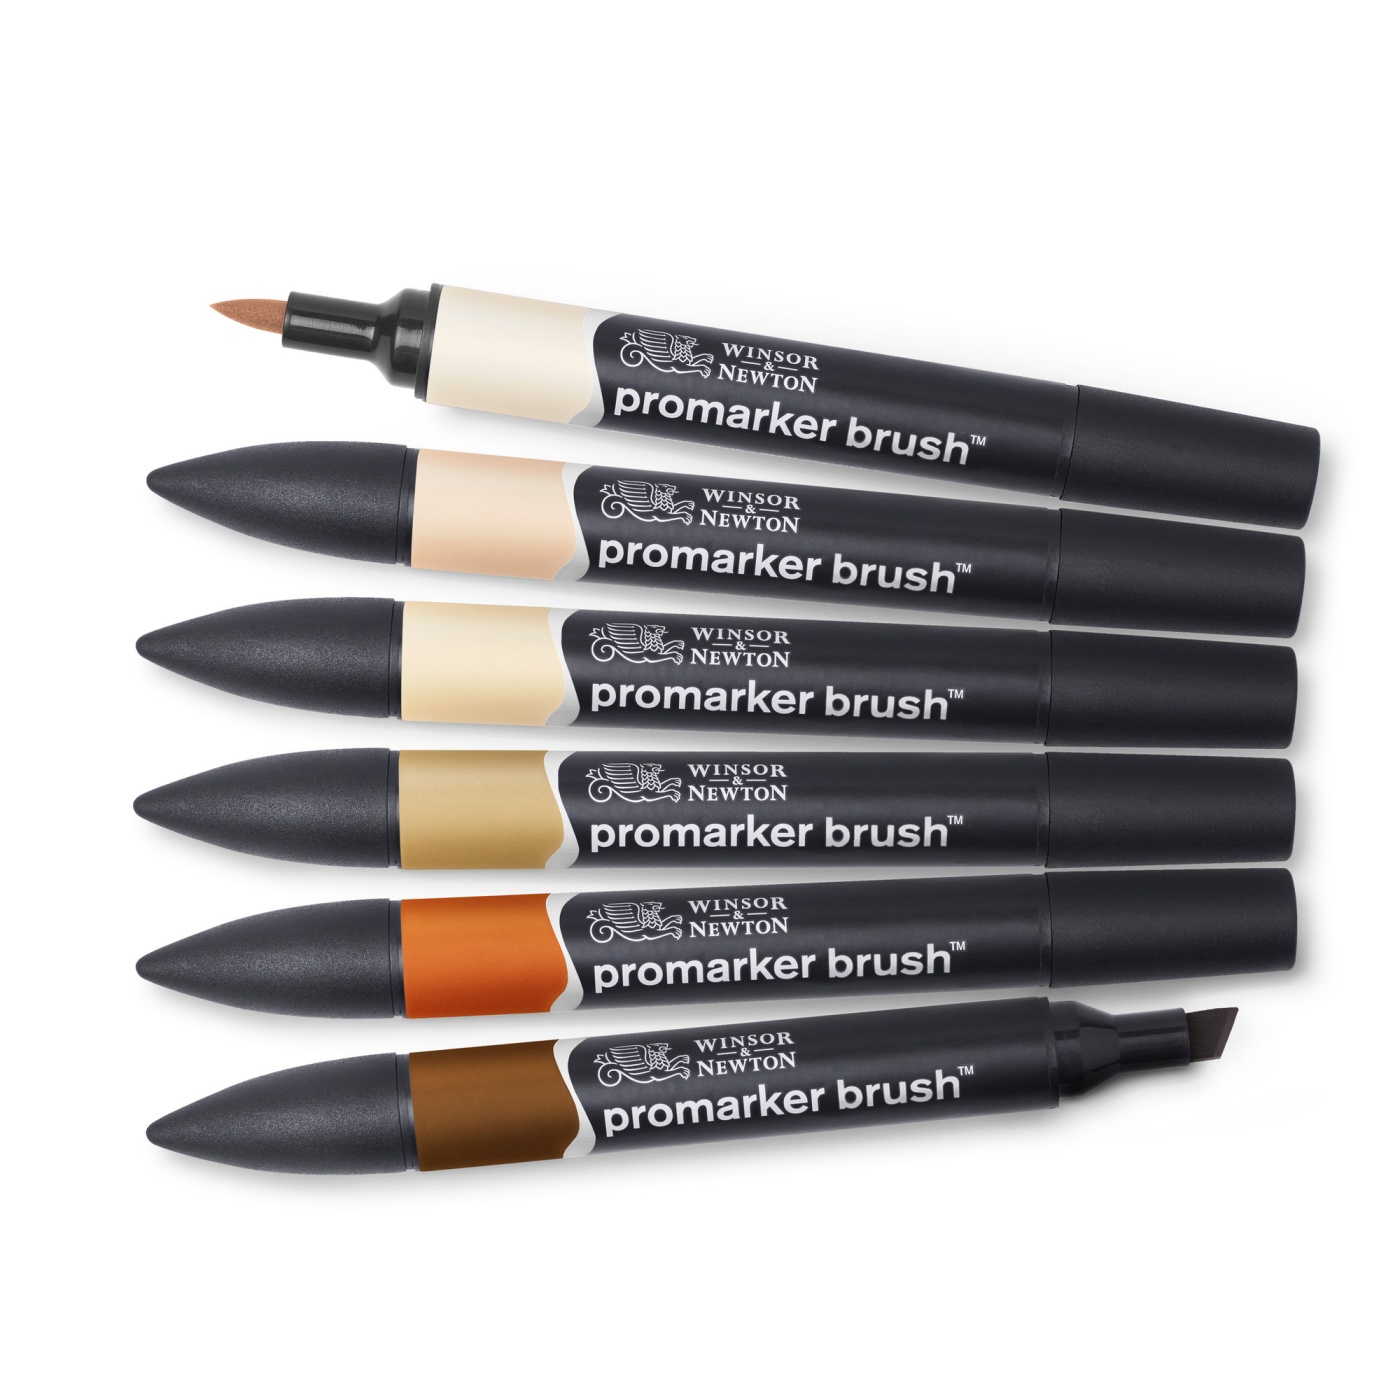 BrushMarker sæt 6 stk Skin Tones i gruppen Penne / Kunstnerpenne / Illustrationmarkers hos Pen Store (100553)